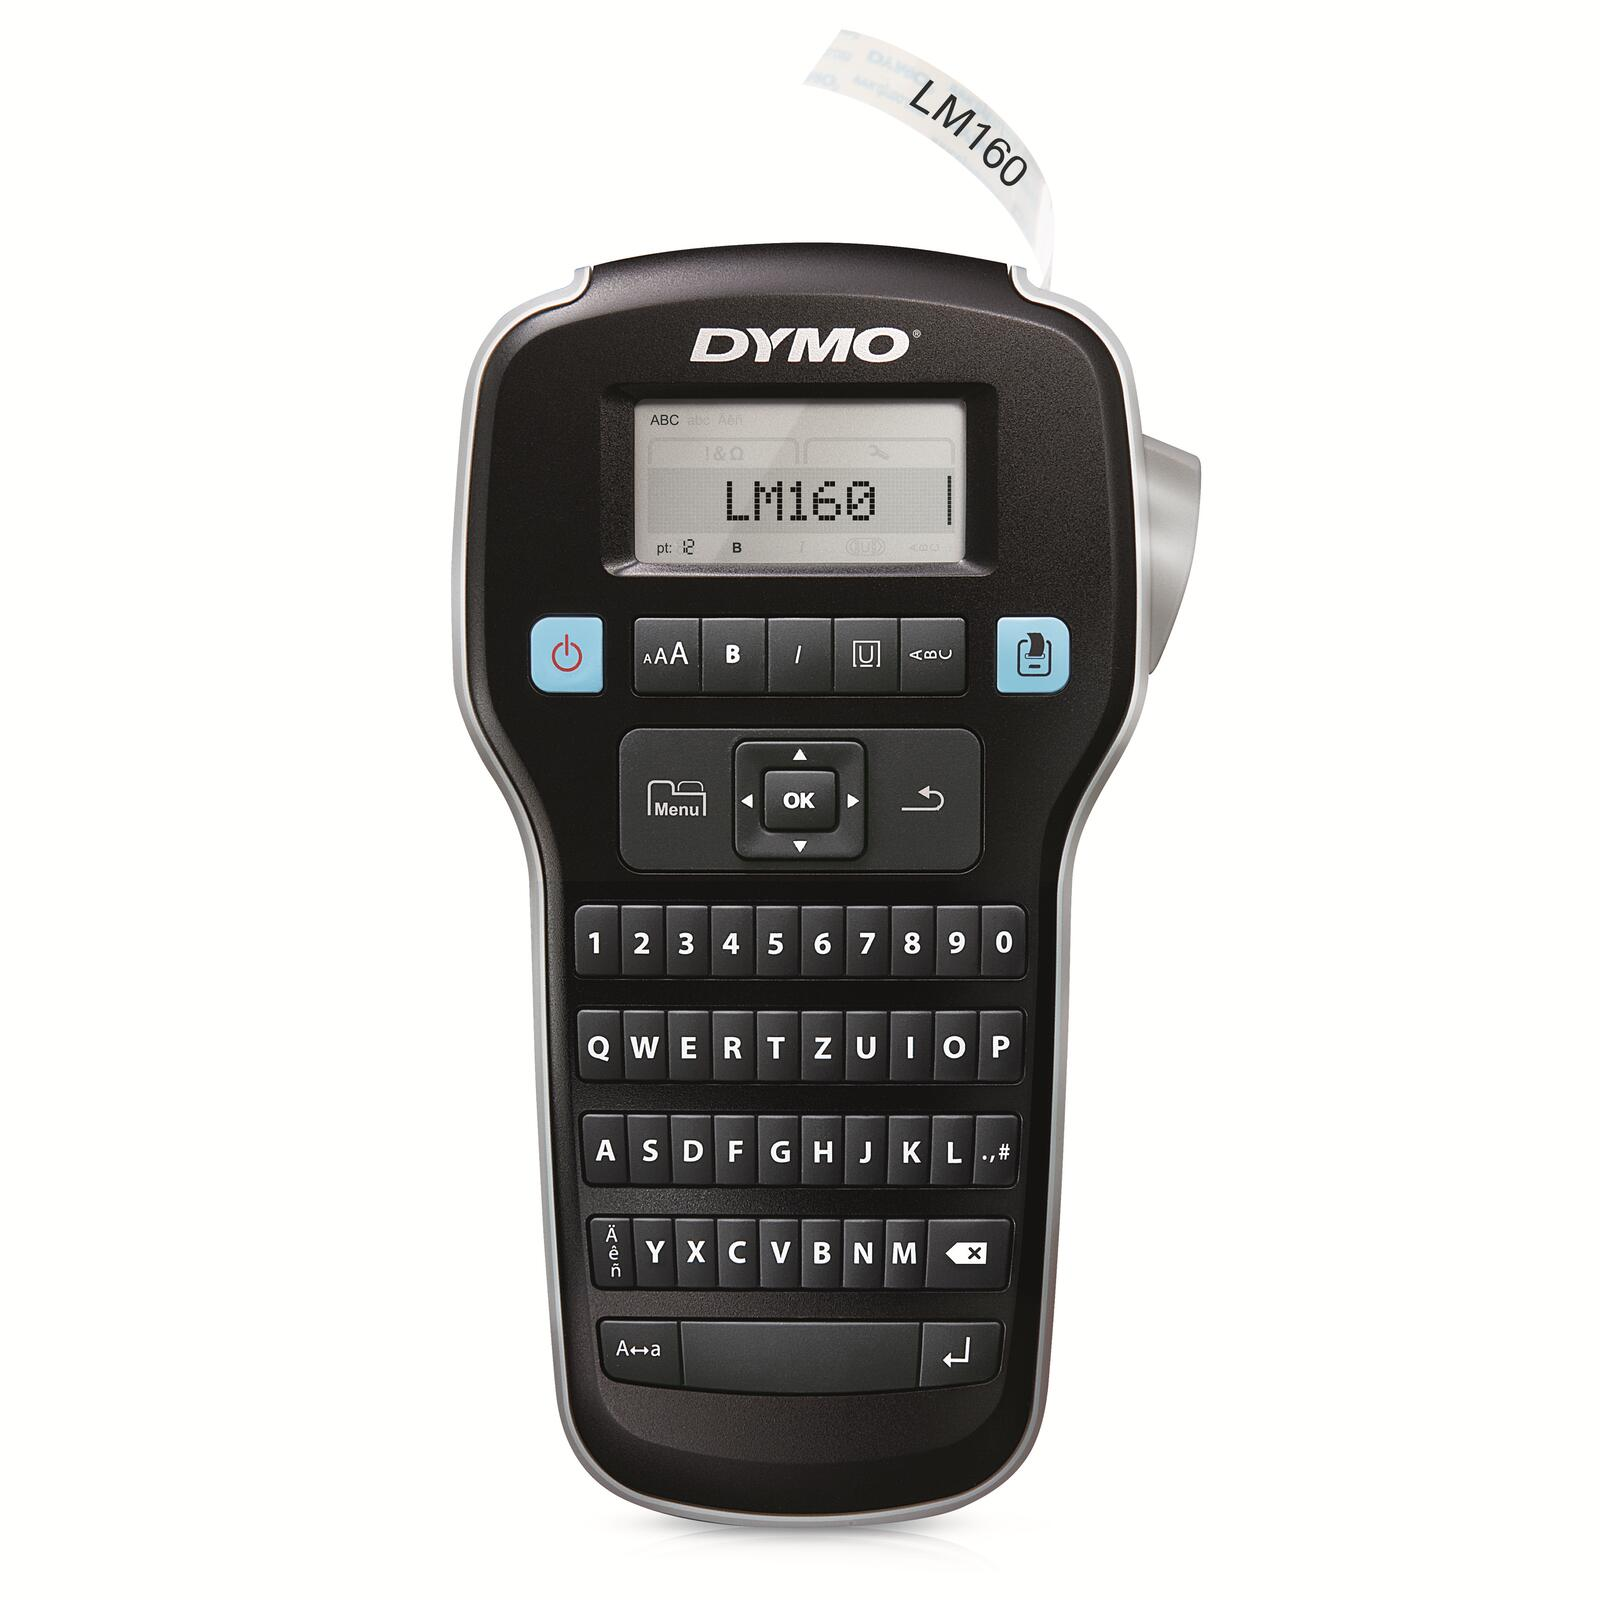 DYMO ® LabelManager™ 160 / - Beschriftungsgerät QWERTZ-Tastatur darkslategray Dymo